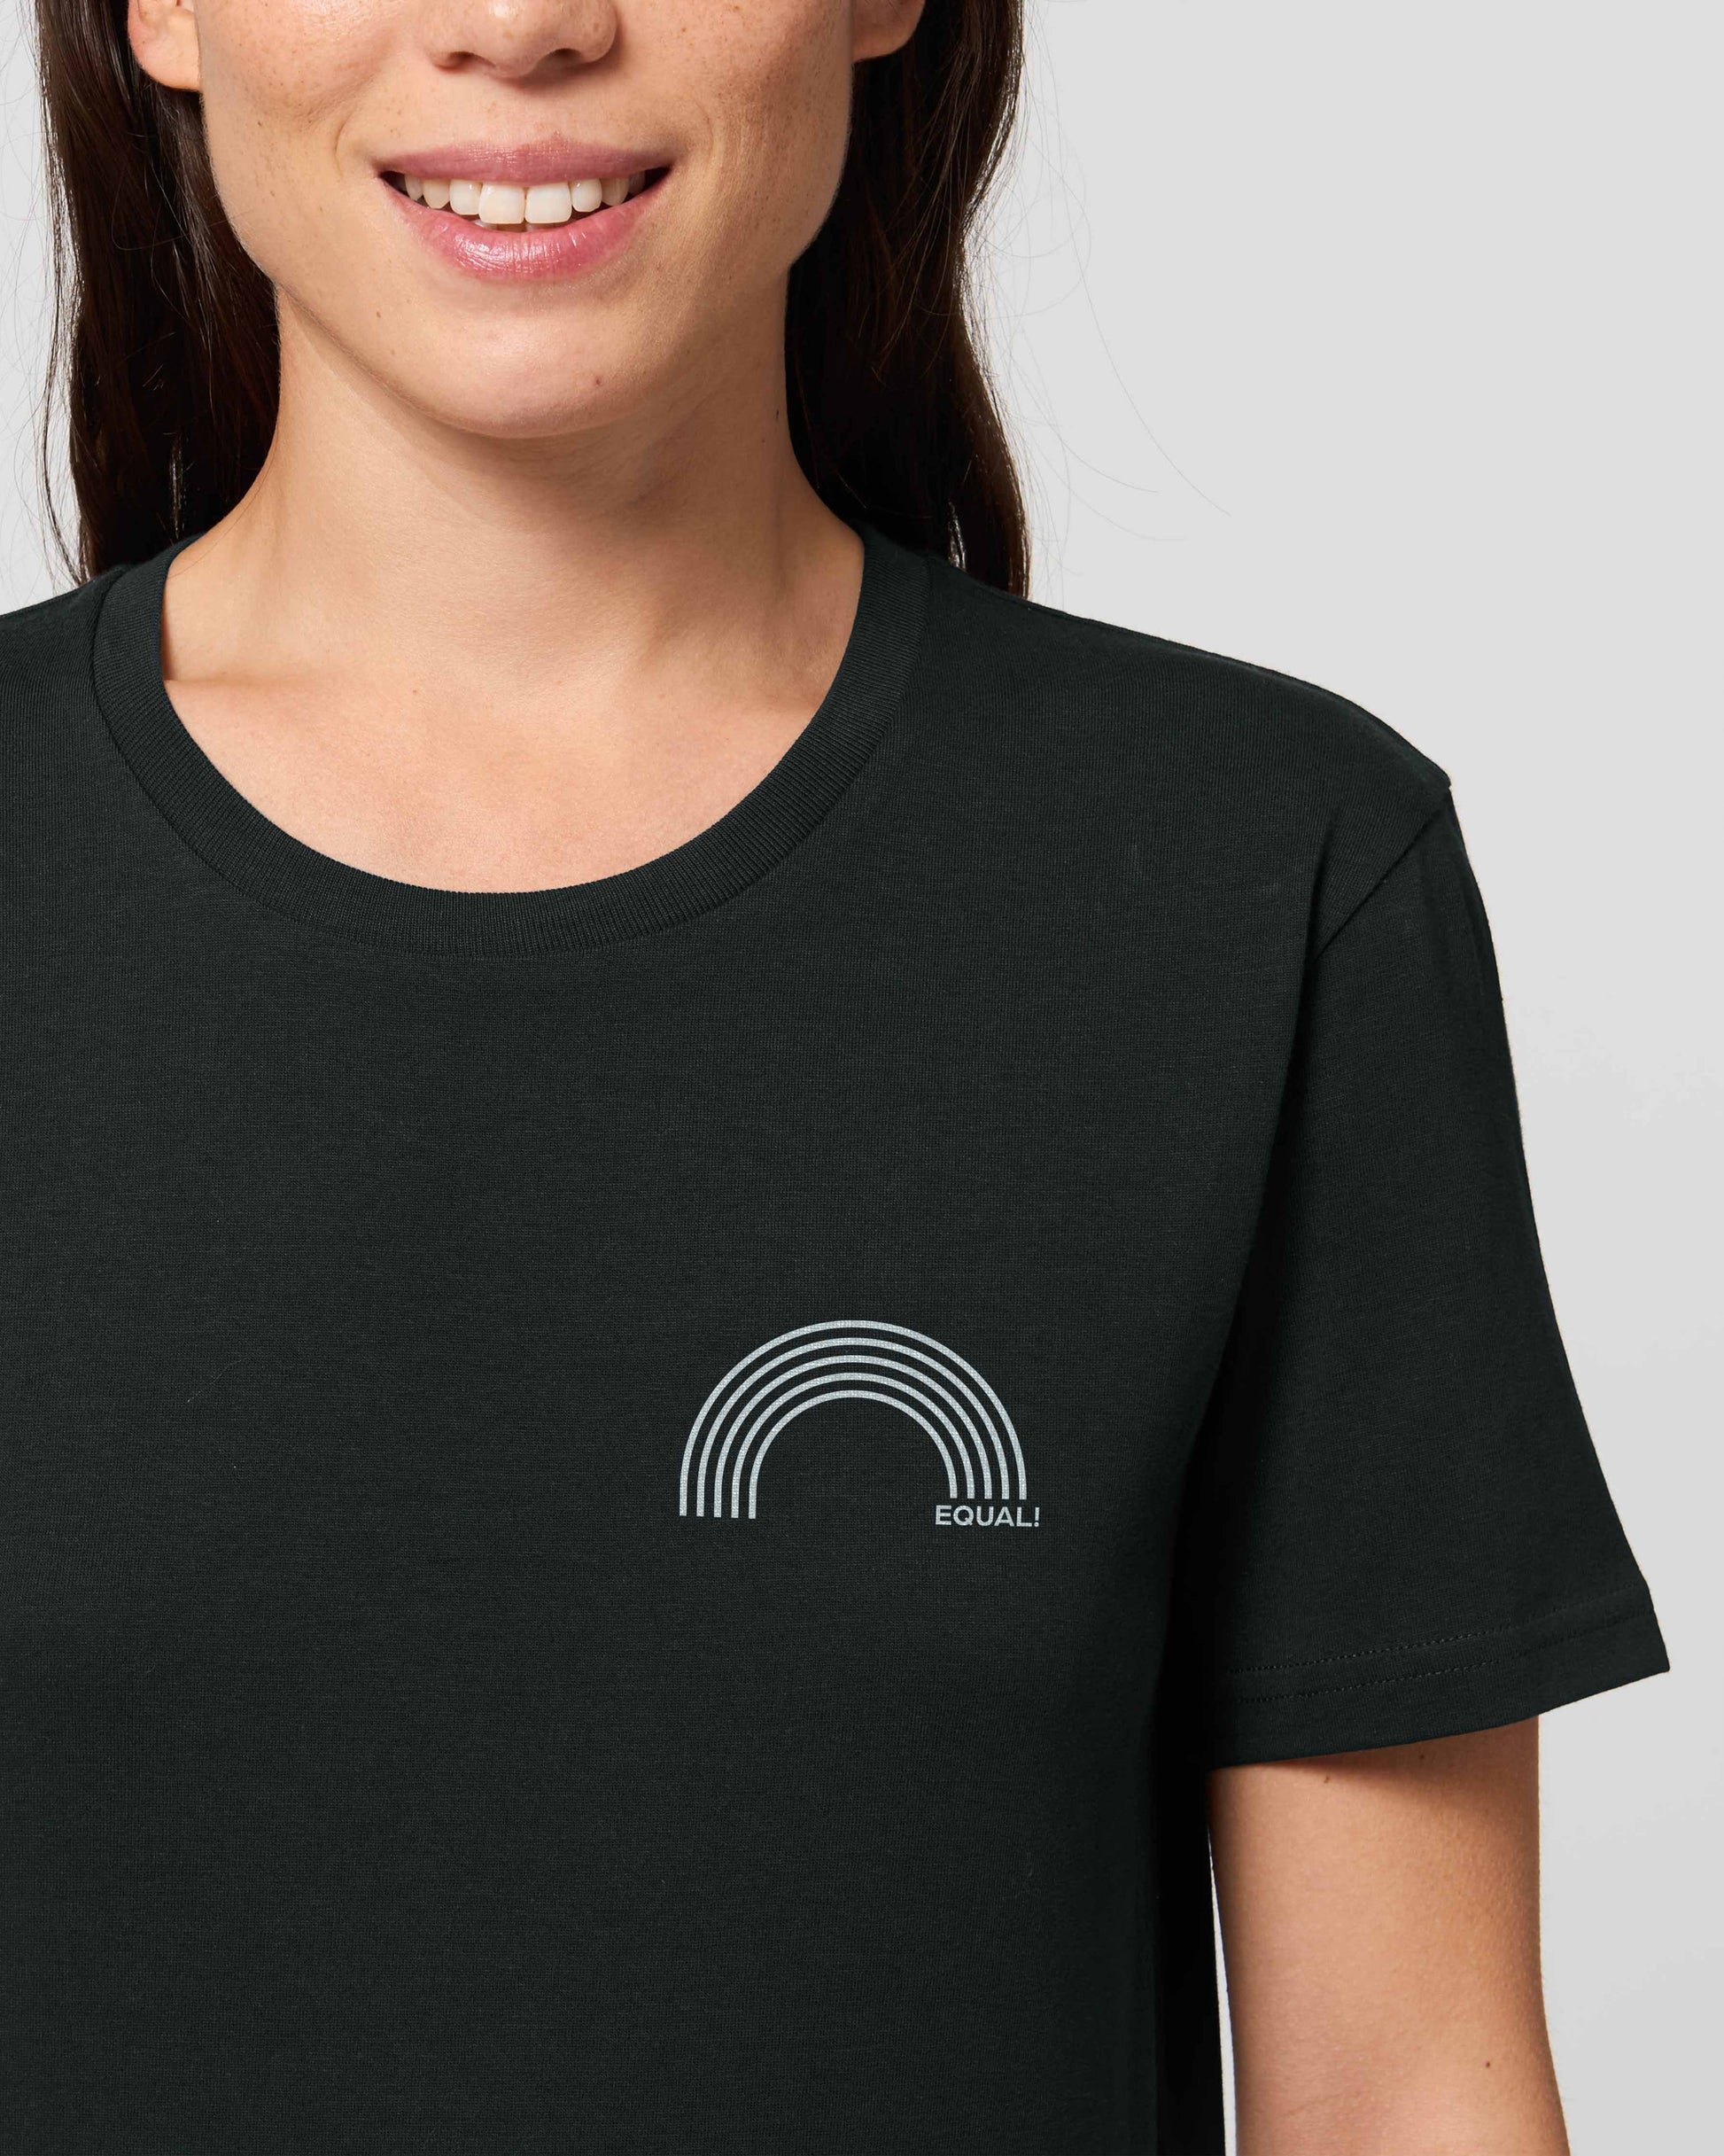 EINHORST® unisex Organic Shirt in Schwarz mit dem Motiv "equal-Regenbogen" in der Kombination weißer Regenbogen mit weißer Schrift, Bild von weiblicher Person mit Shirt